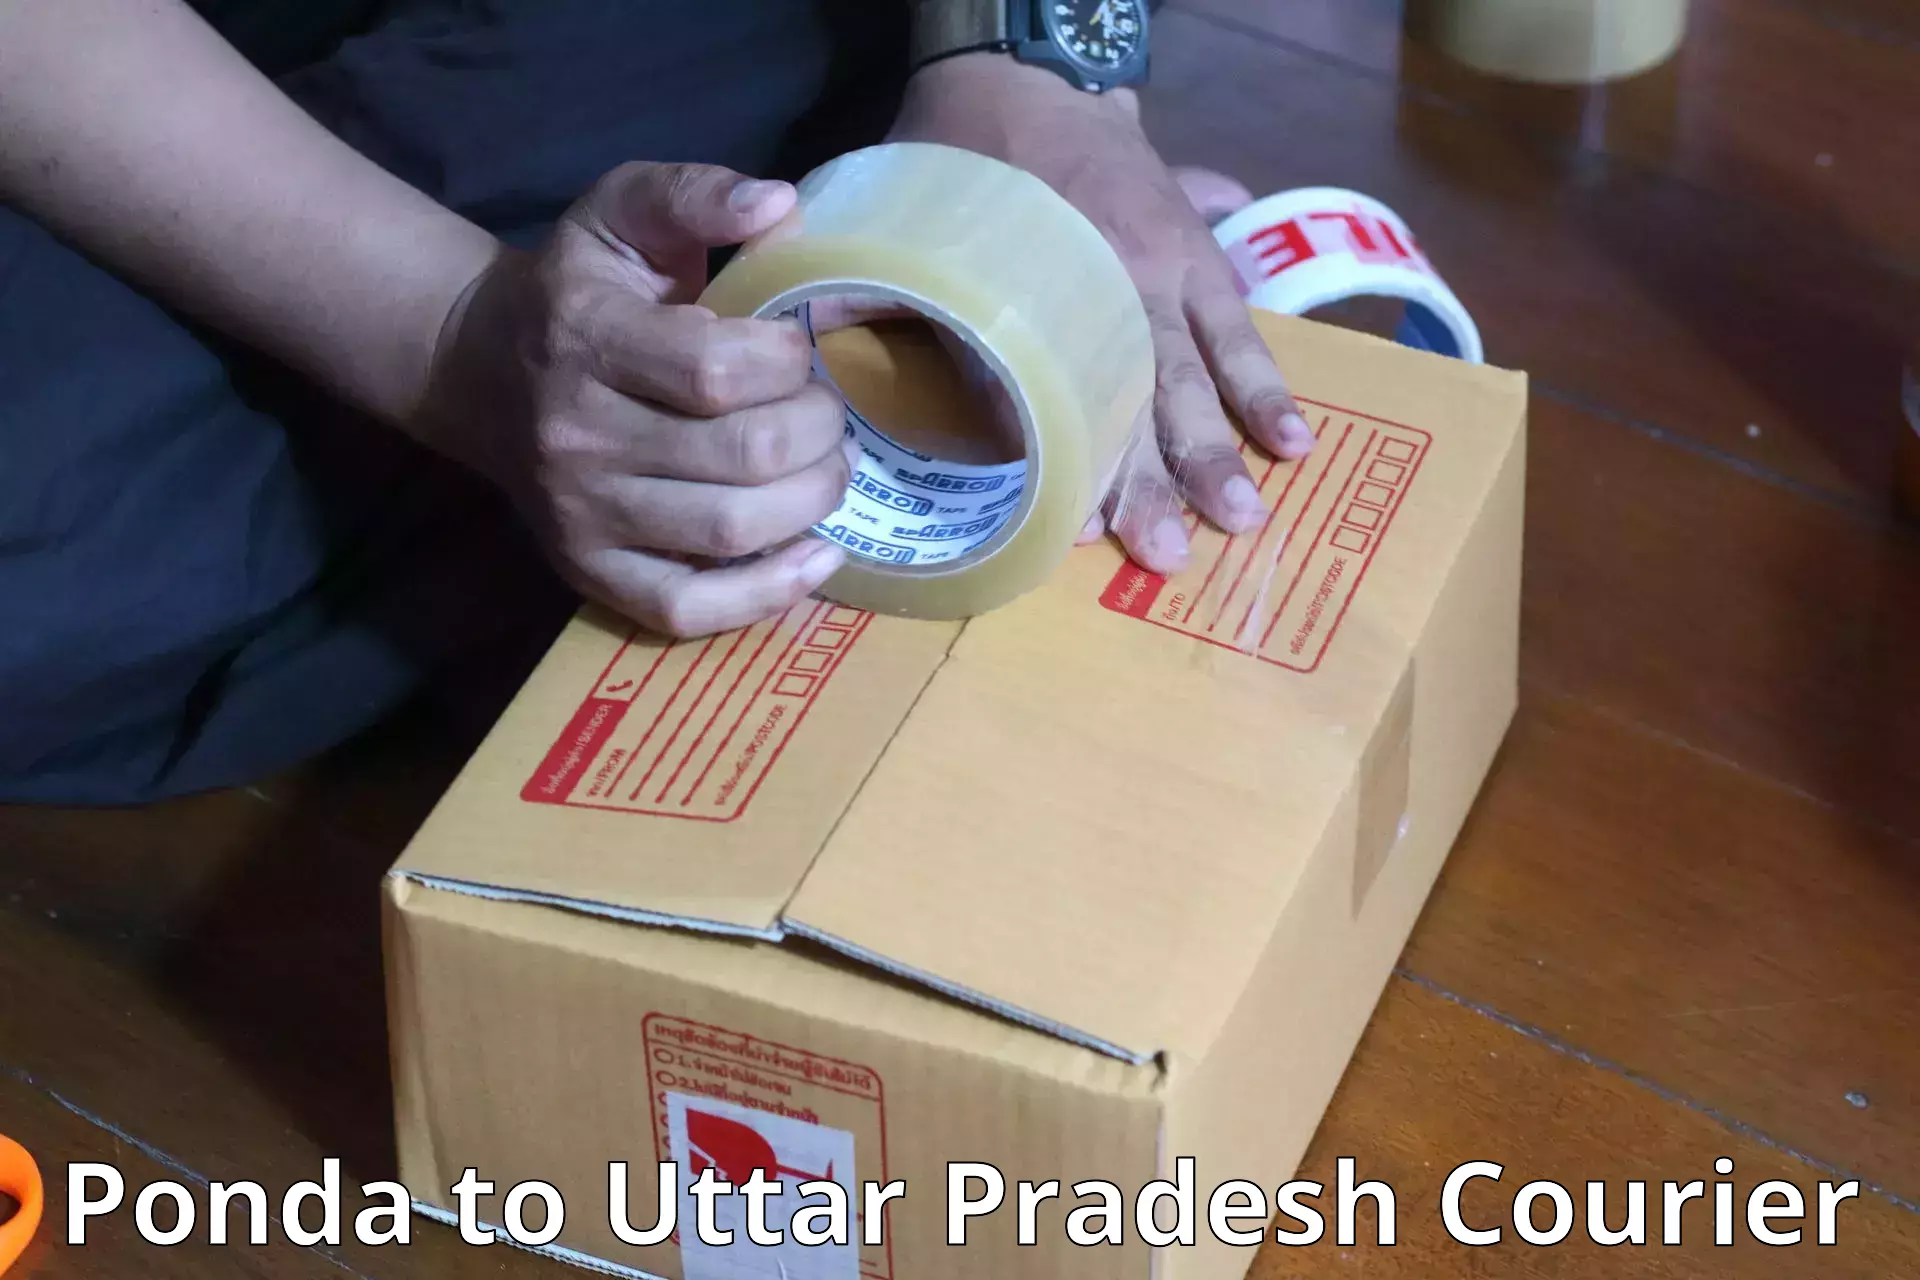 Baggage courier service in Ponda to Uttar Pradesh